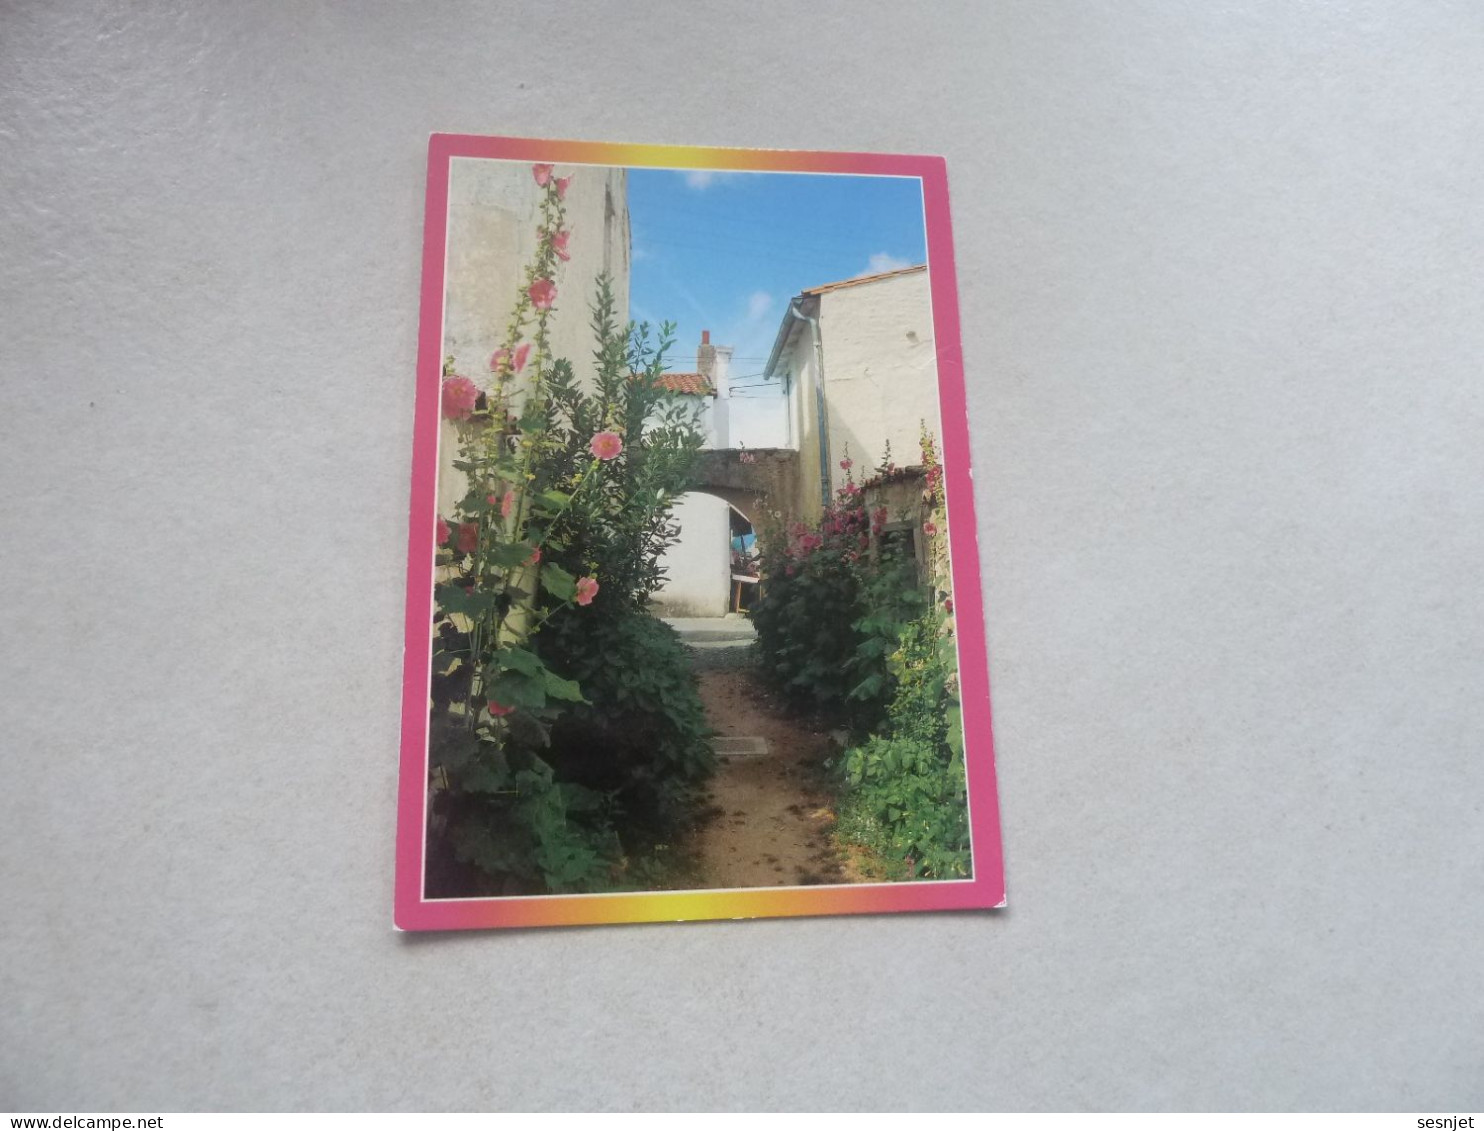 L'Ile-de-Ré - Les Portes - Venelle En Fleurs - R 153 - Editions As-de-Coeur - Artaud Frères - Année 1990 - - Blumen